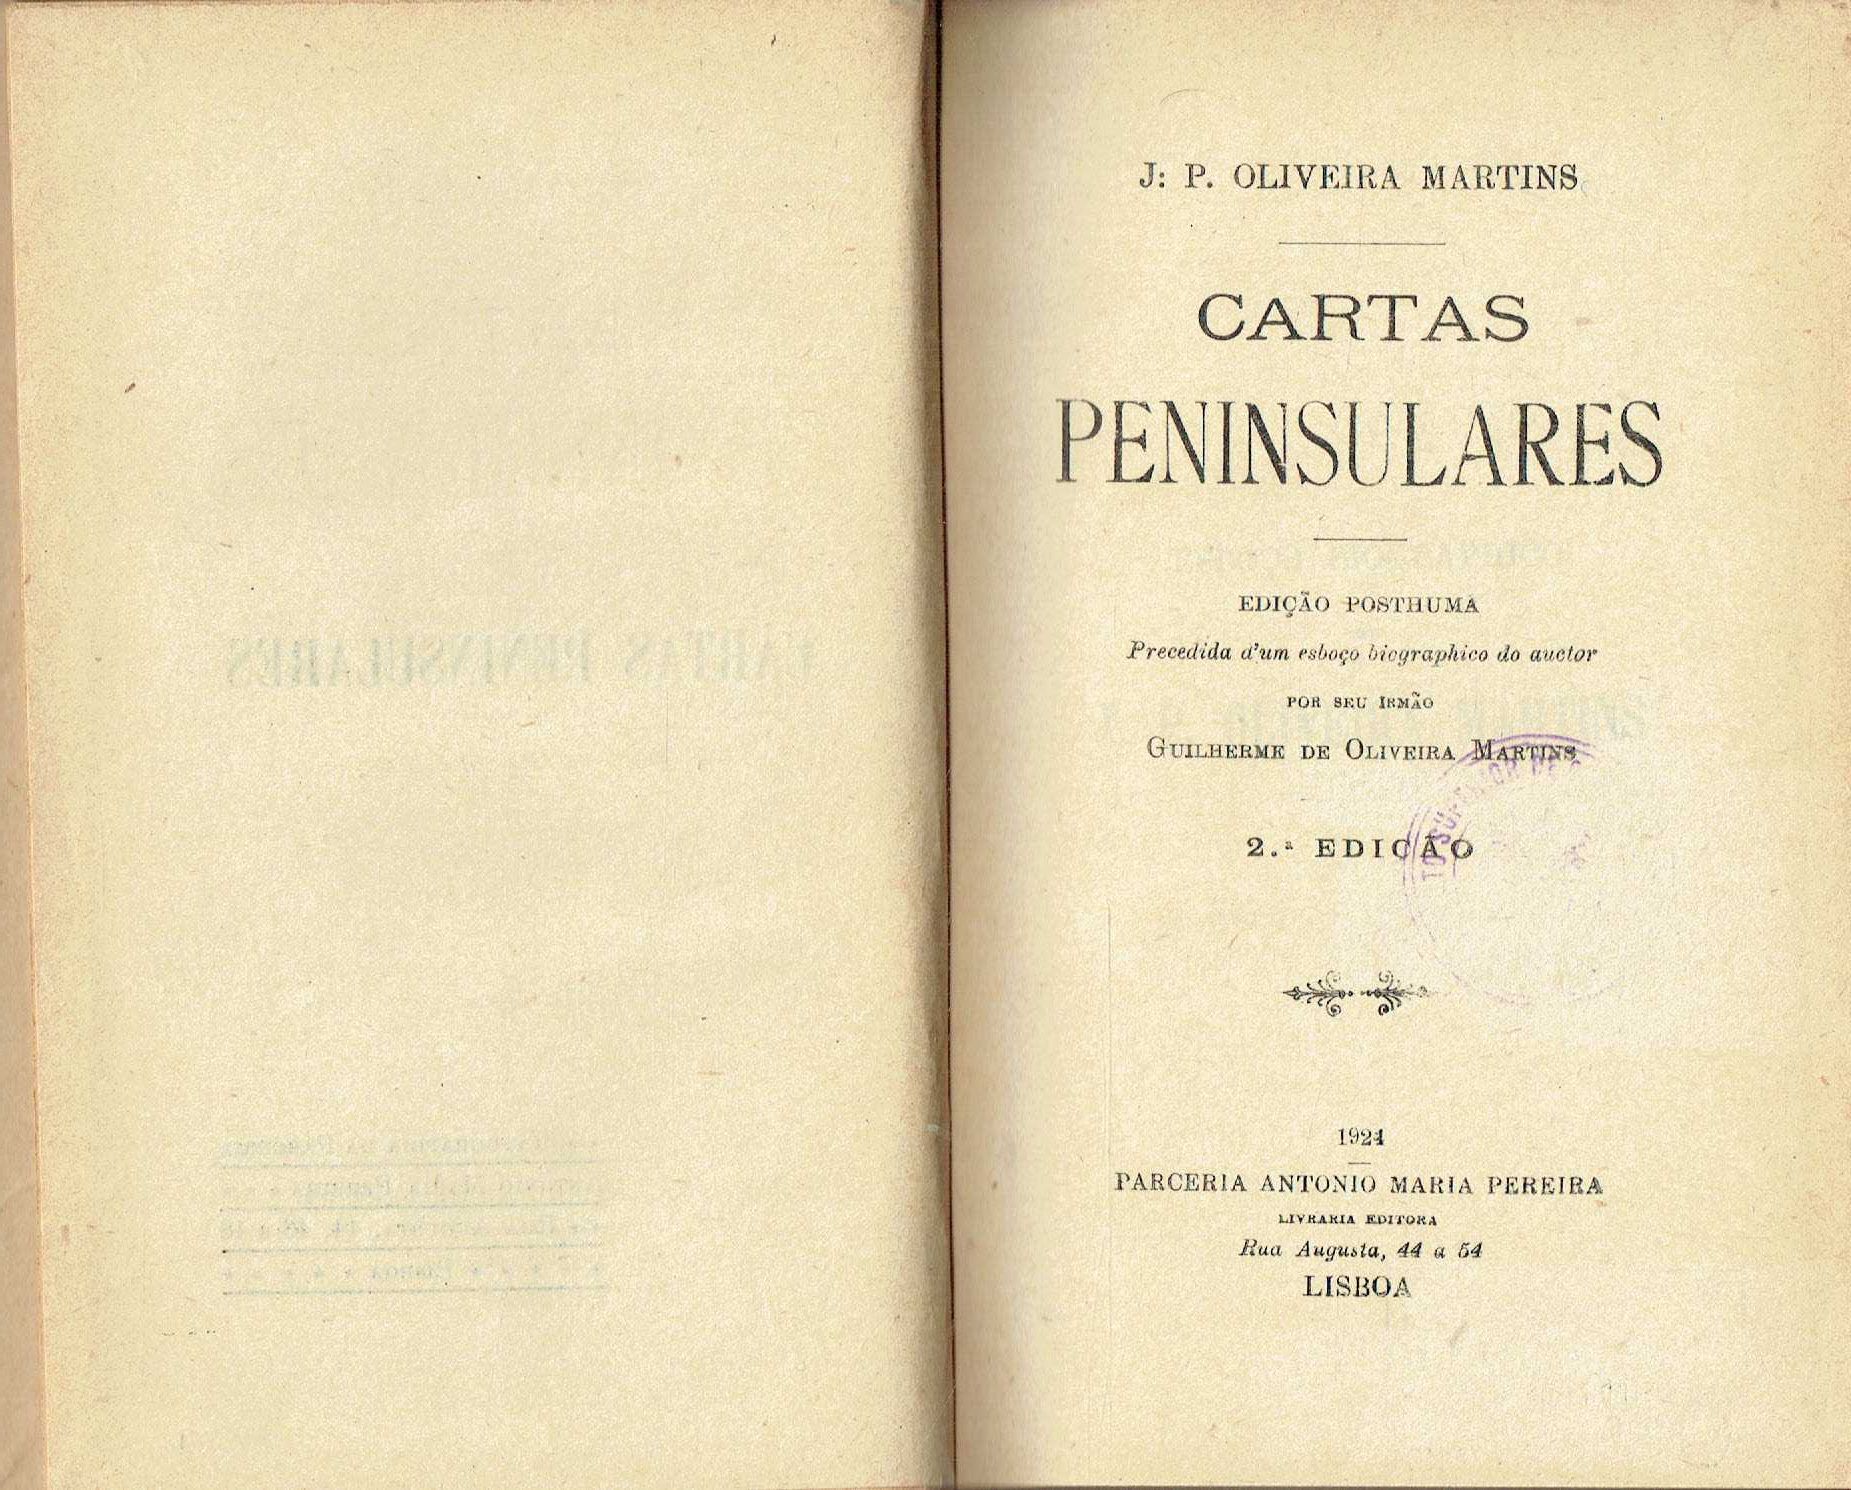 7837

Cartas peninsulares 
de Oliveira Martins